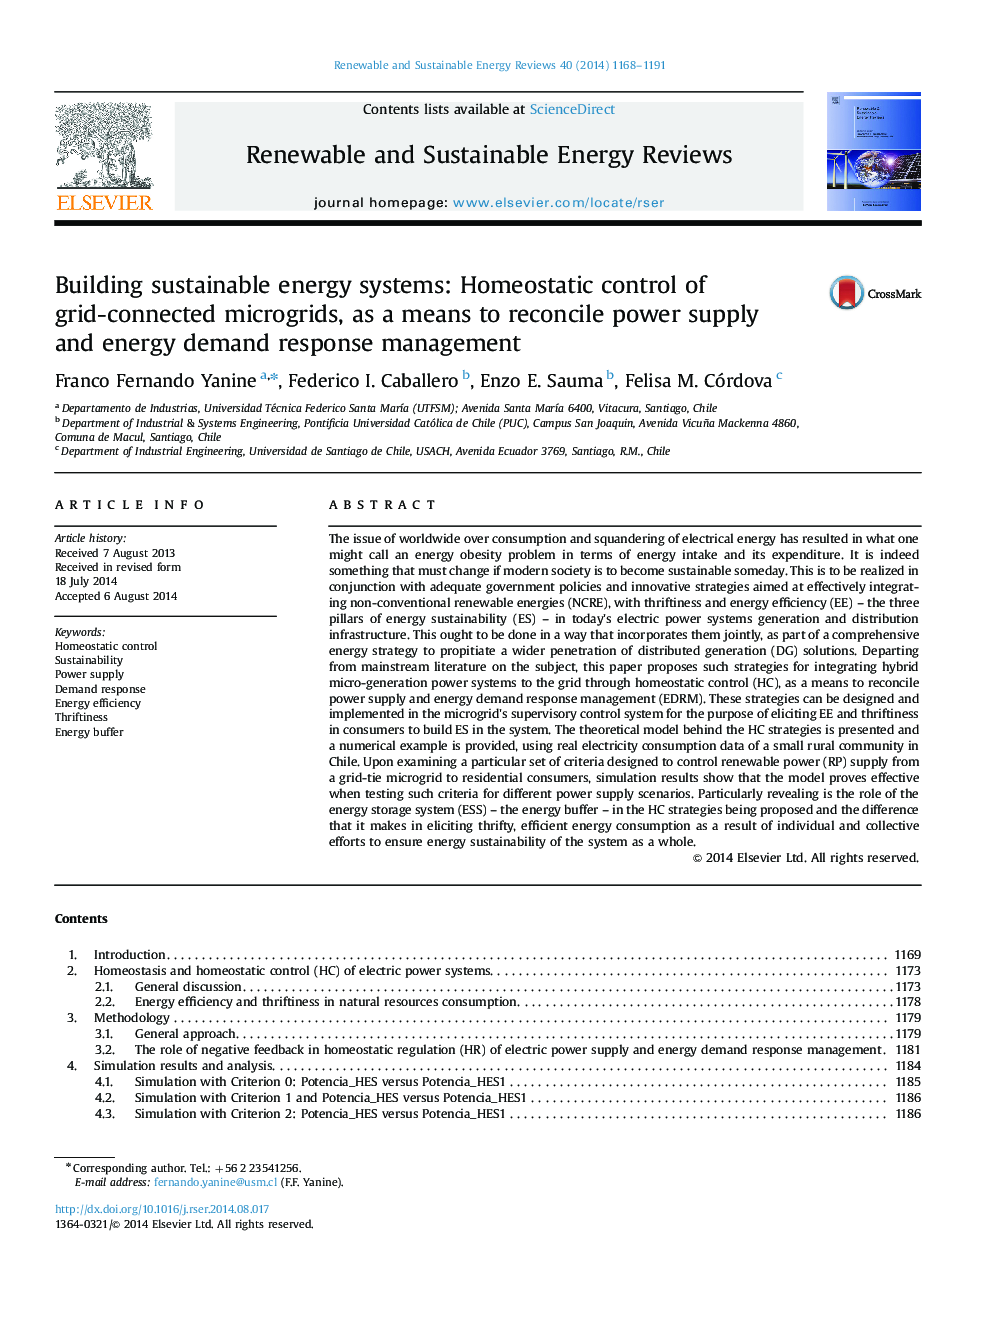 سیستم های انرژی پایدار ساختمان: کنترل خانگی با میکروپردرهای متصل به شبکه، به عنوان وسیله ای برای ادغام منبع تغذیه و مدیریت پاسخ تقاضای انرژی 